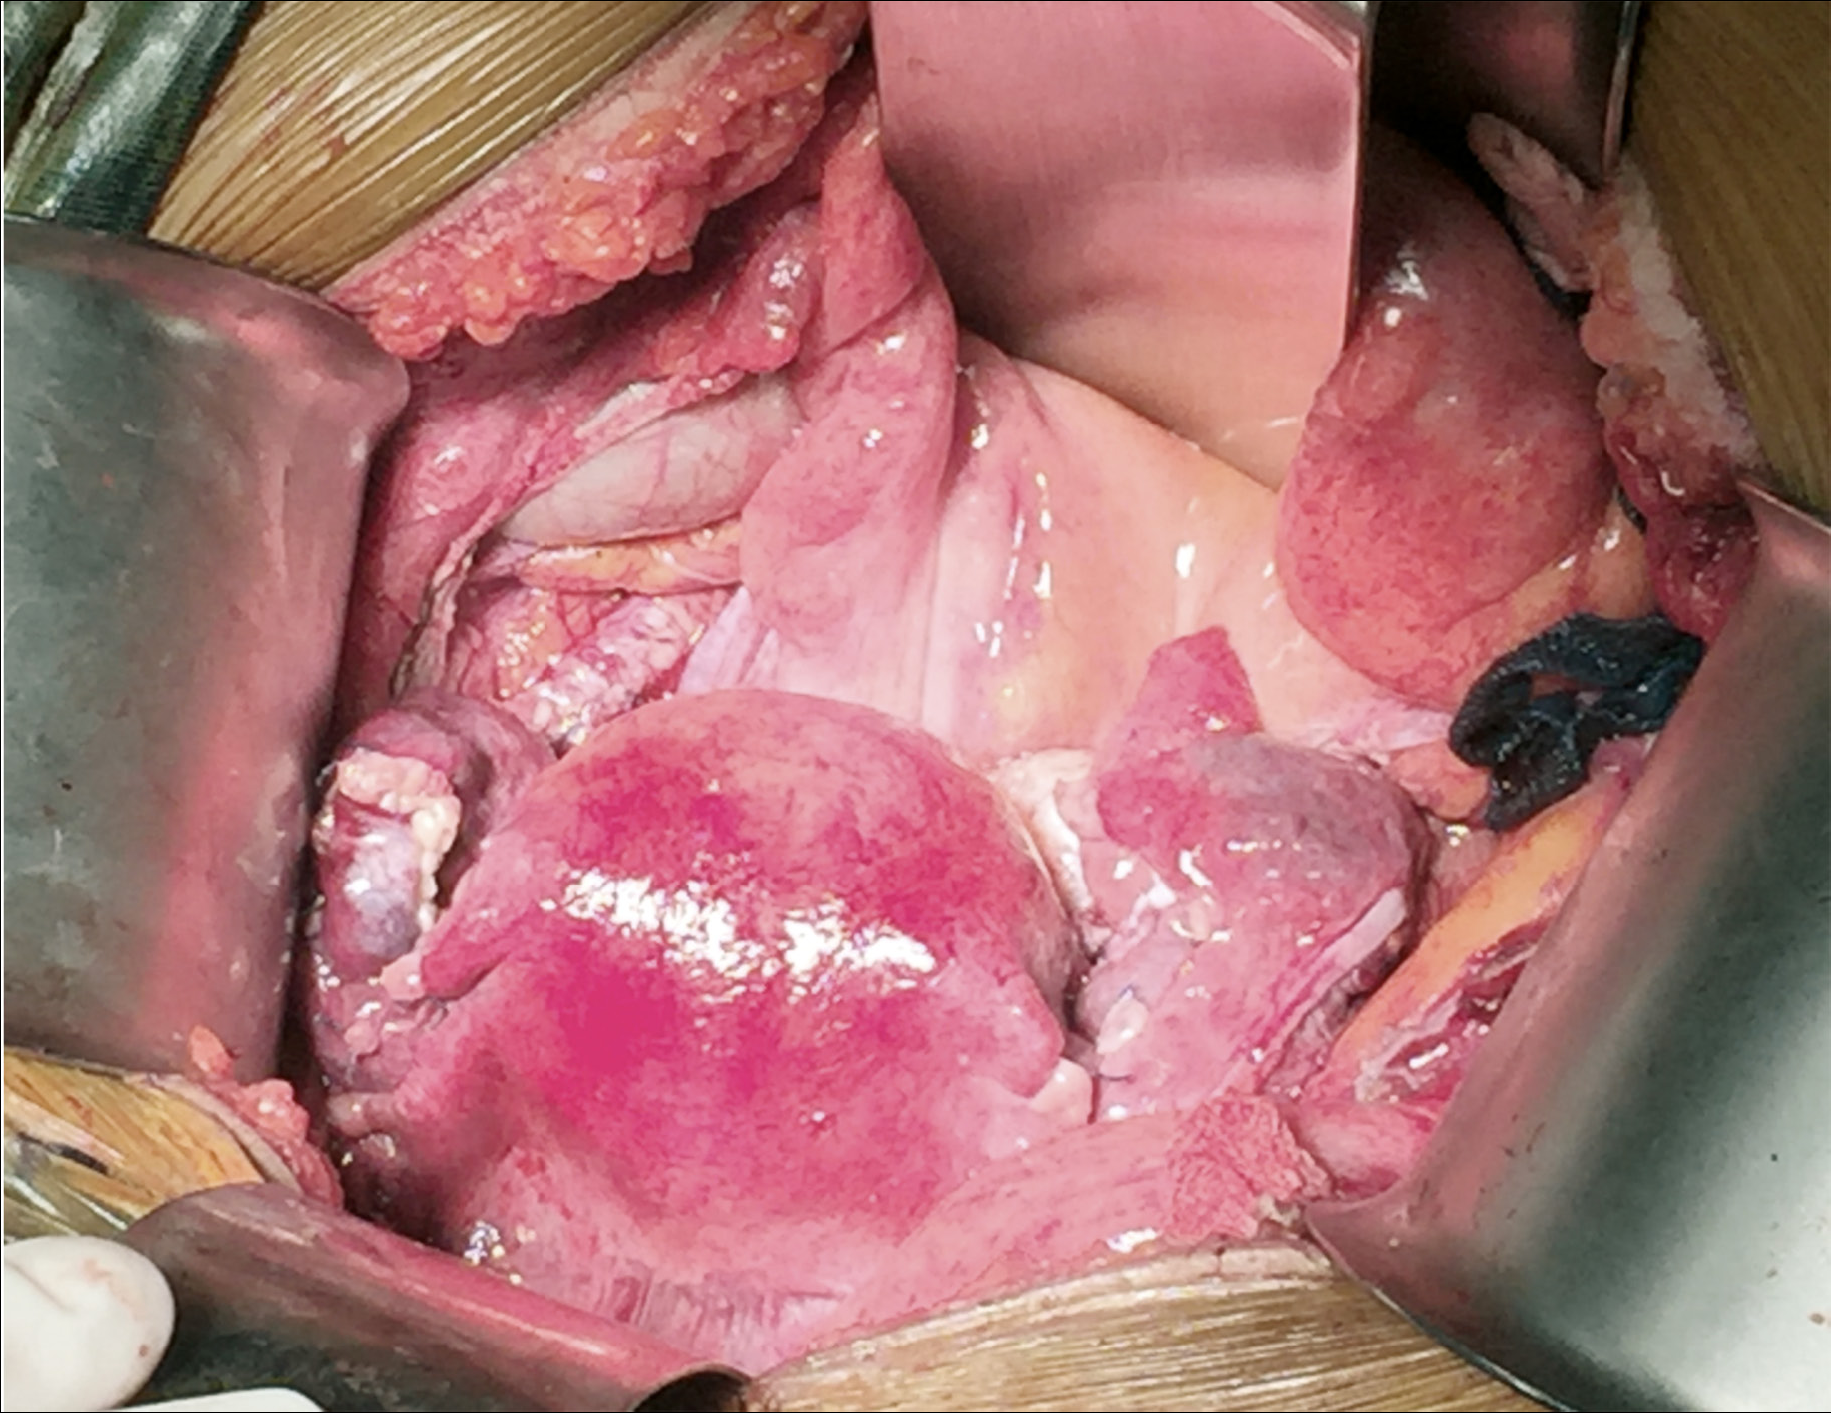 髂外静脉和供体阴道残端缝合到受体阴道的子宫血管吻合图示意图